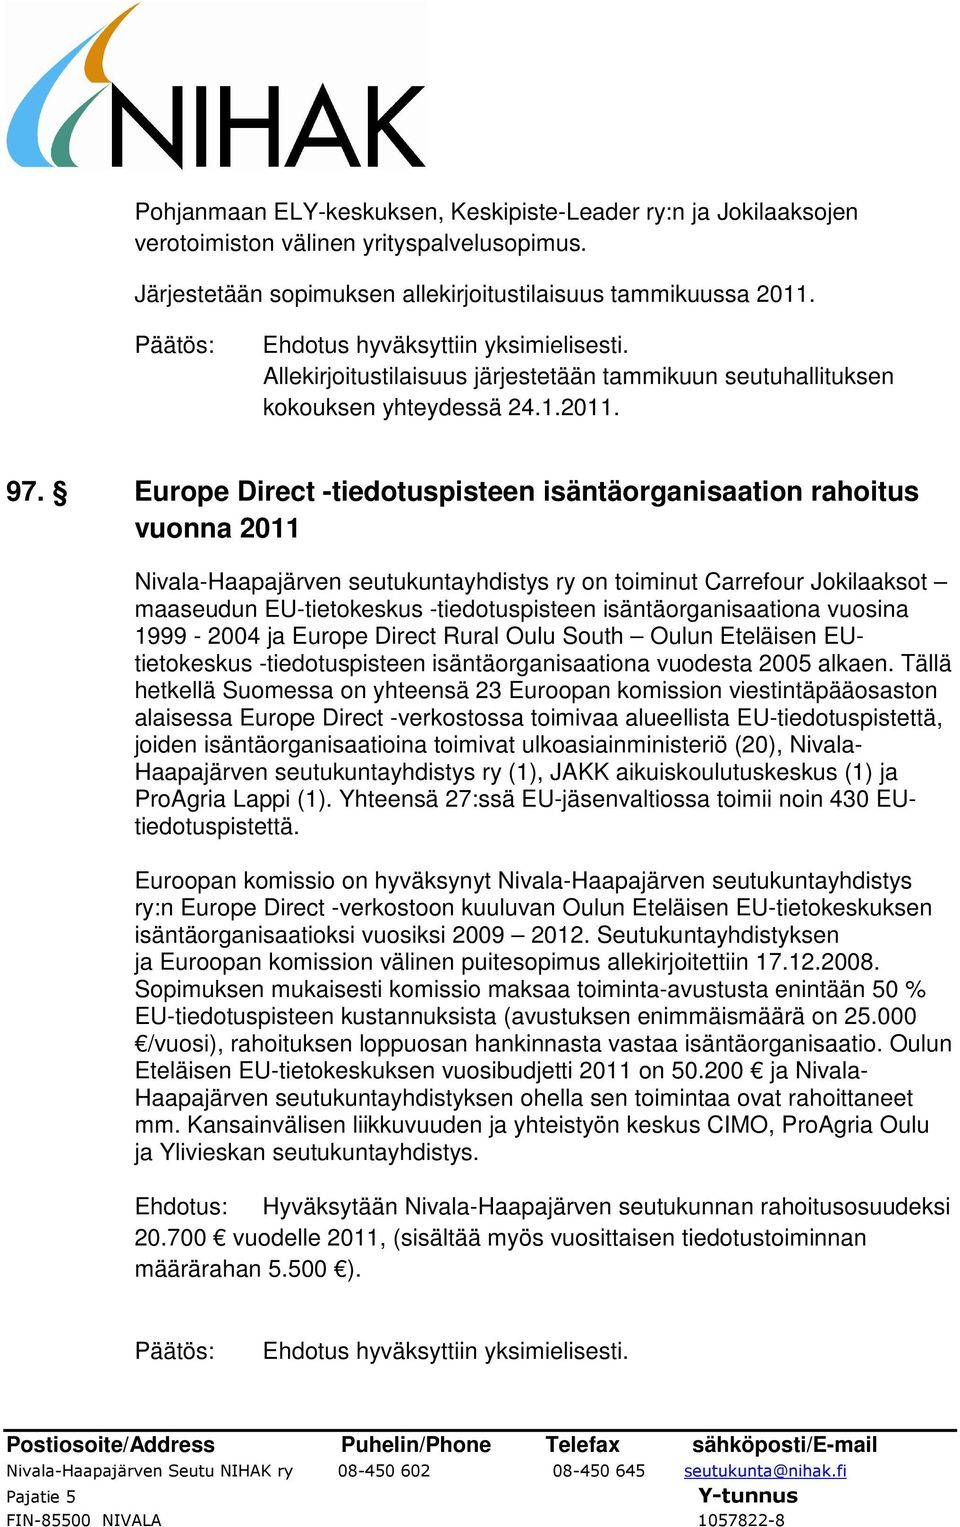 Europe Direct -tiedotuspisteen isäntäorganisaation rahoitus vuonna 2011 Nivala-Haapajärven seutukuntayhdistys ry on toiminut Carrefour Jokilaaksot maaseudun EU-tietokeskus -tiedotuspisteen